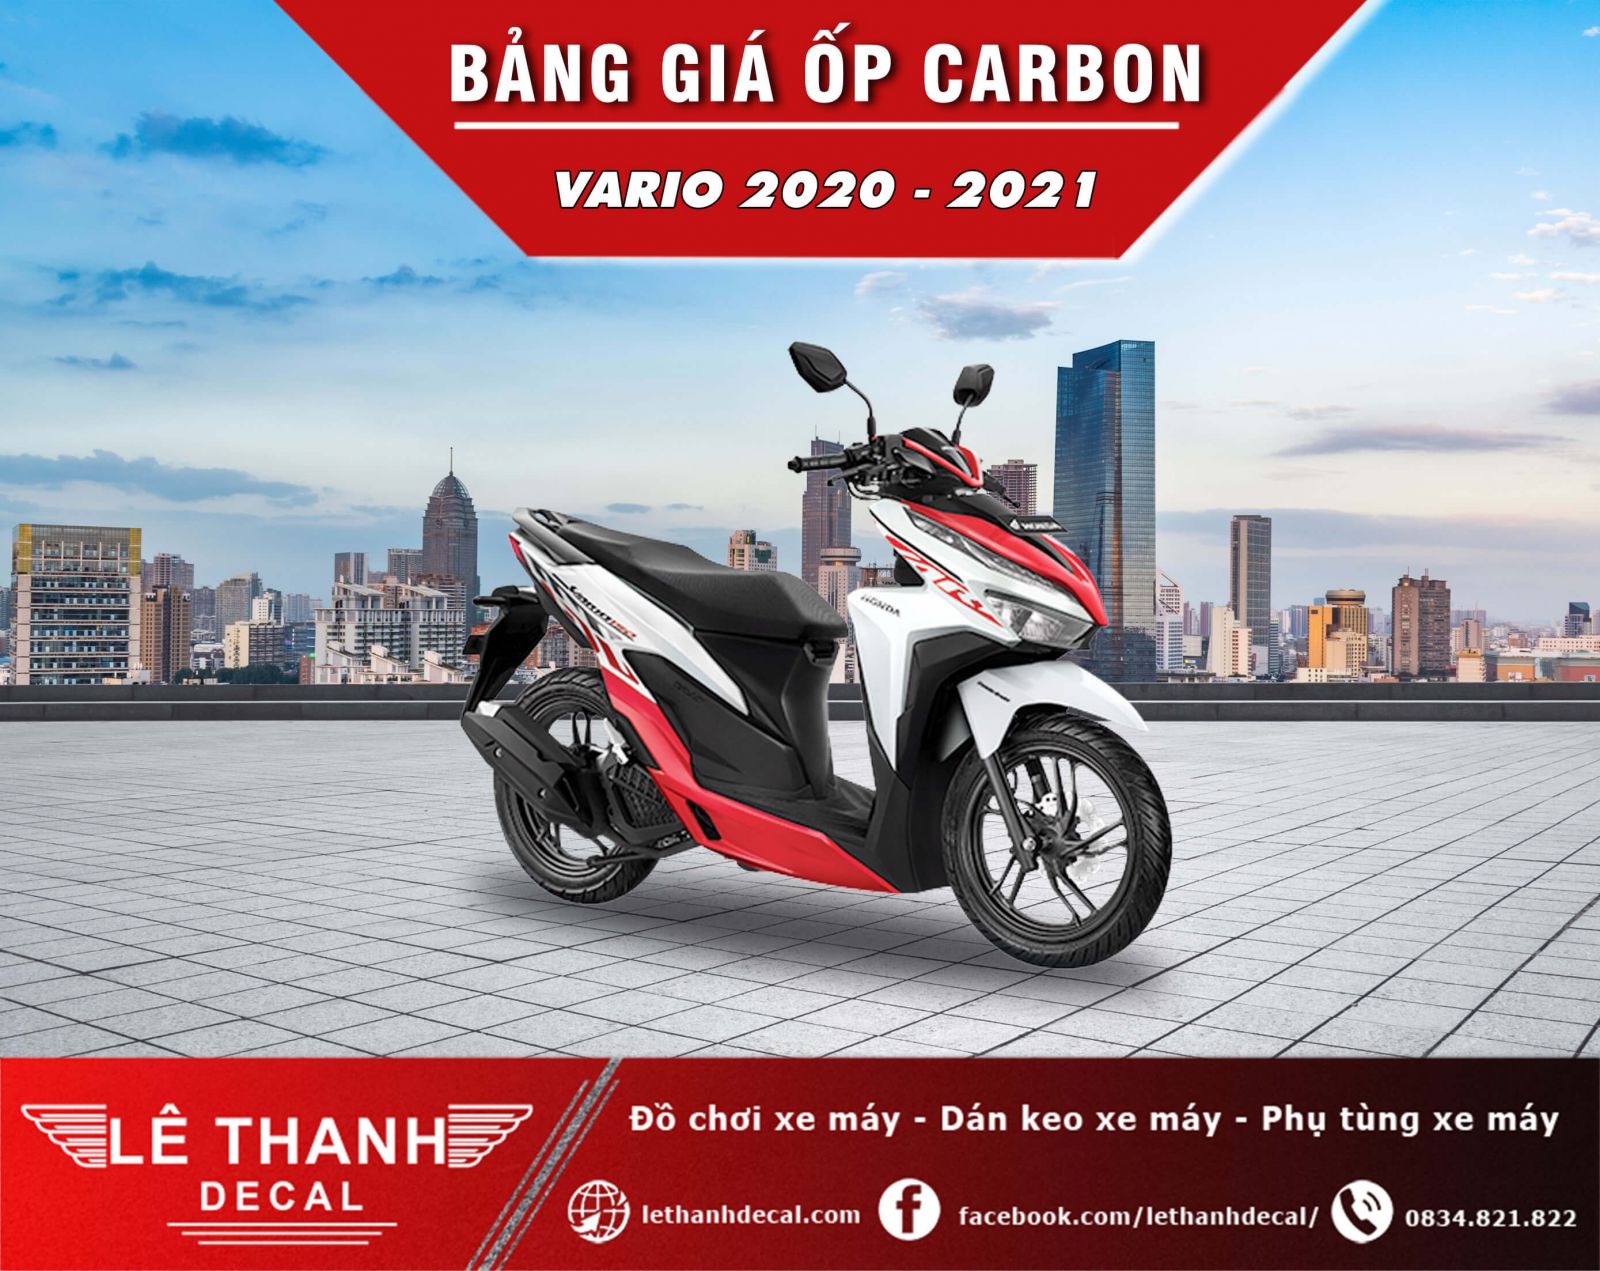 đồ chơi xe máy Vario 2020 - 2021 sơn carbon